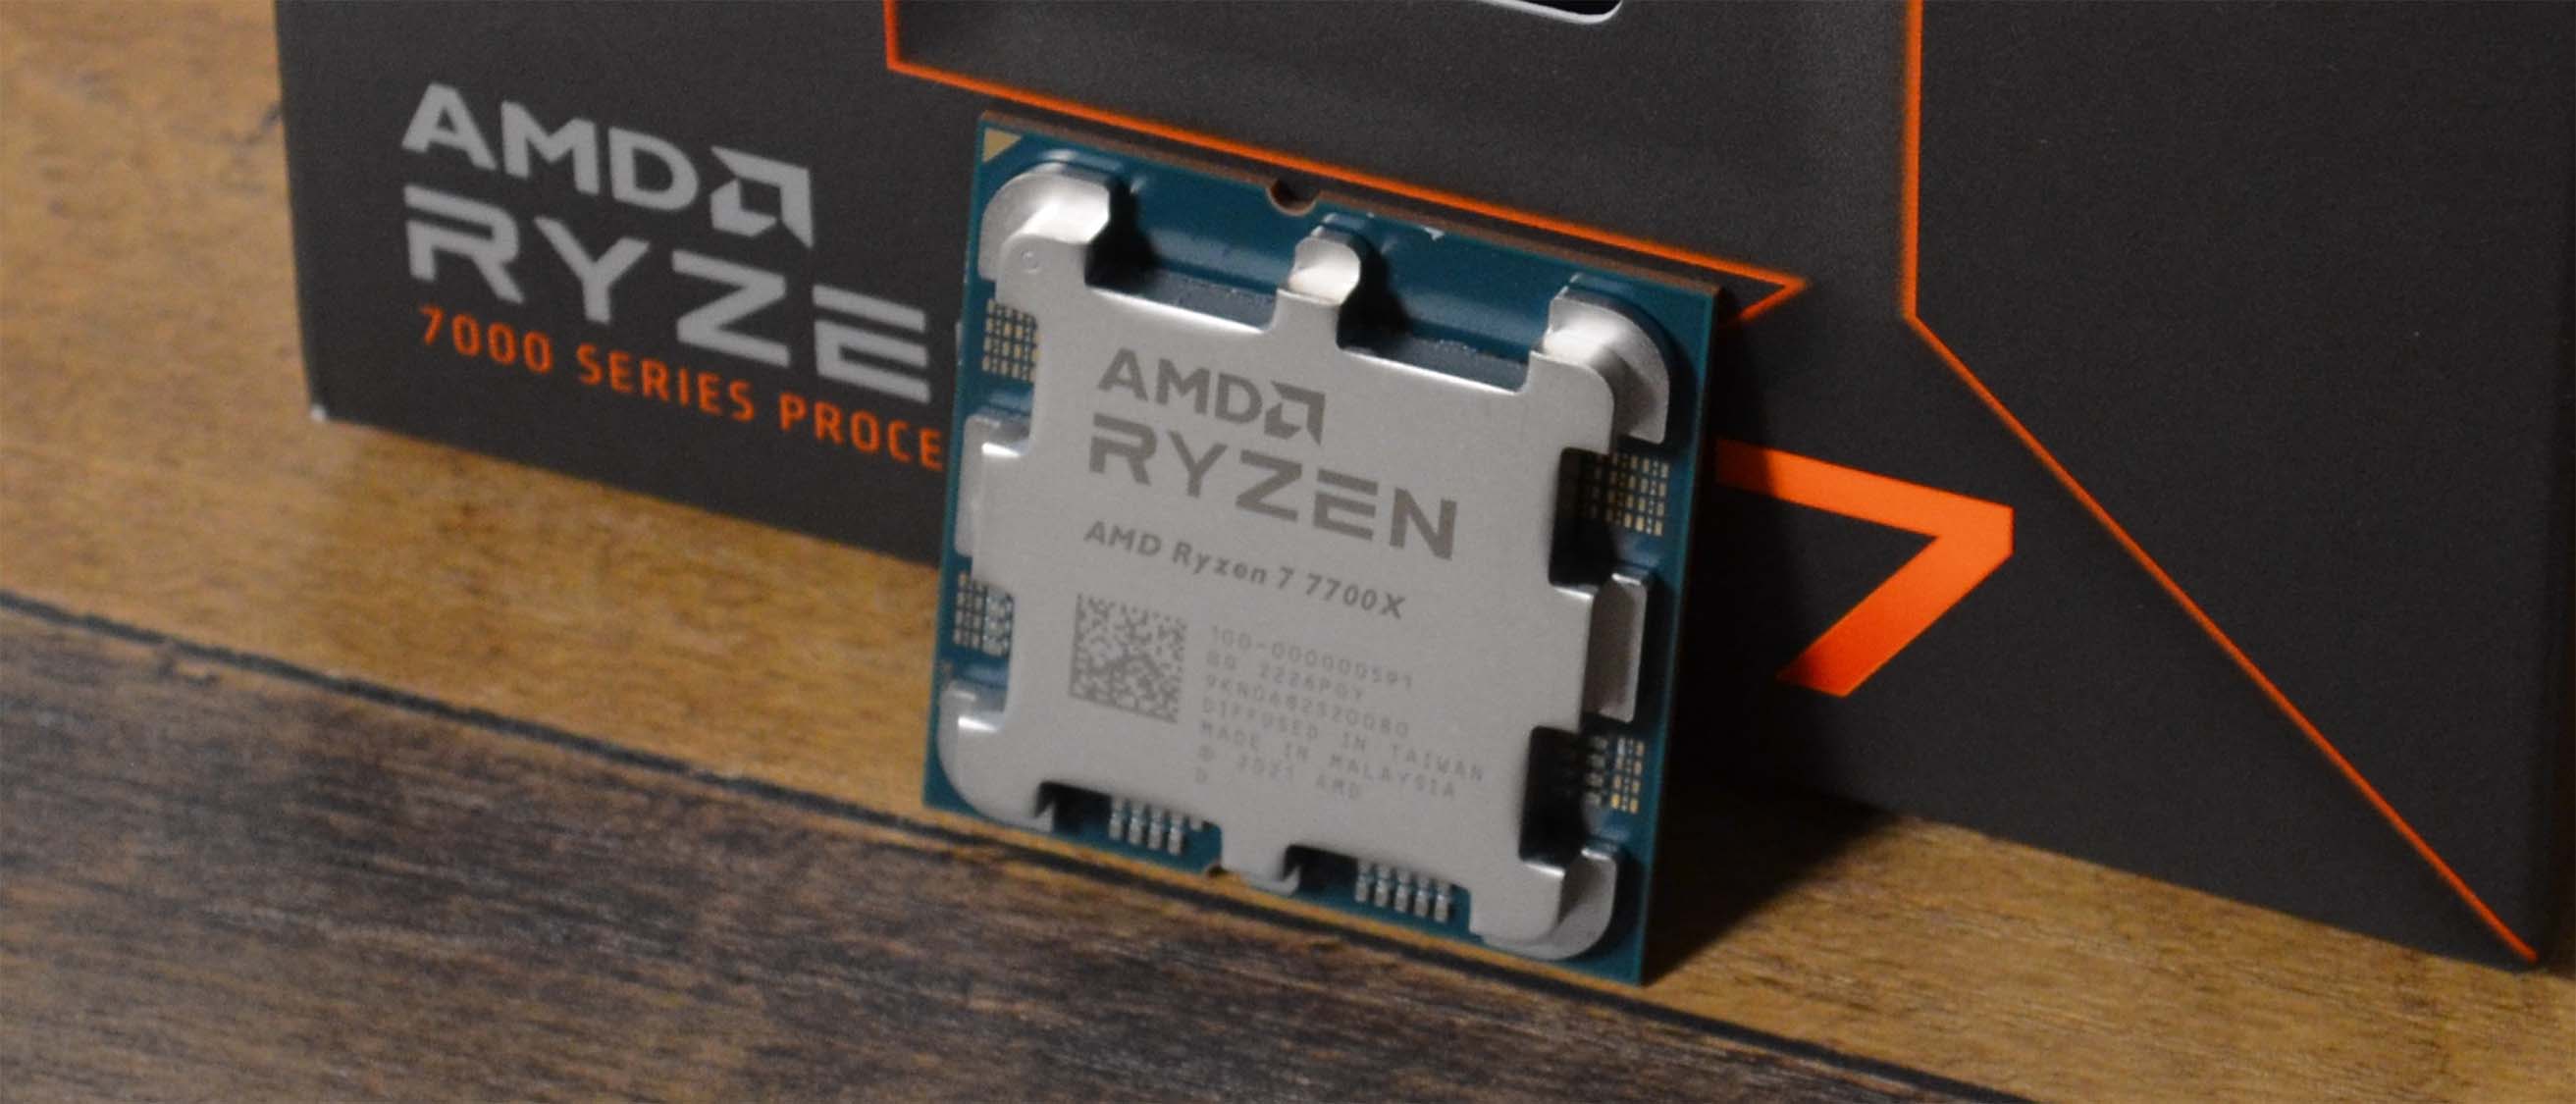 Adobe Photoshop: 13th Gen Intel Core vs AMD Ryzen 7000